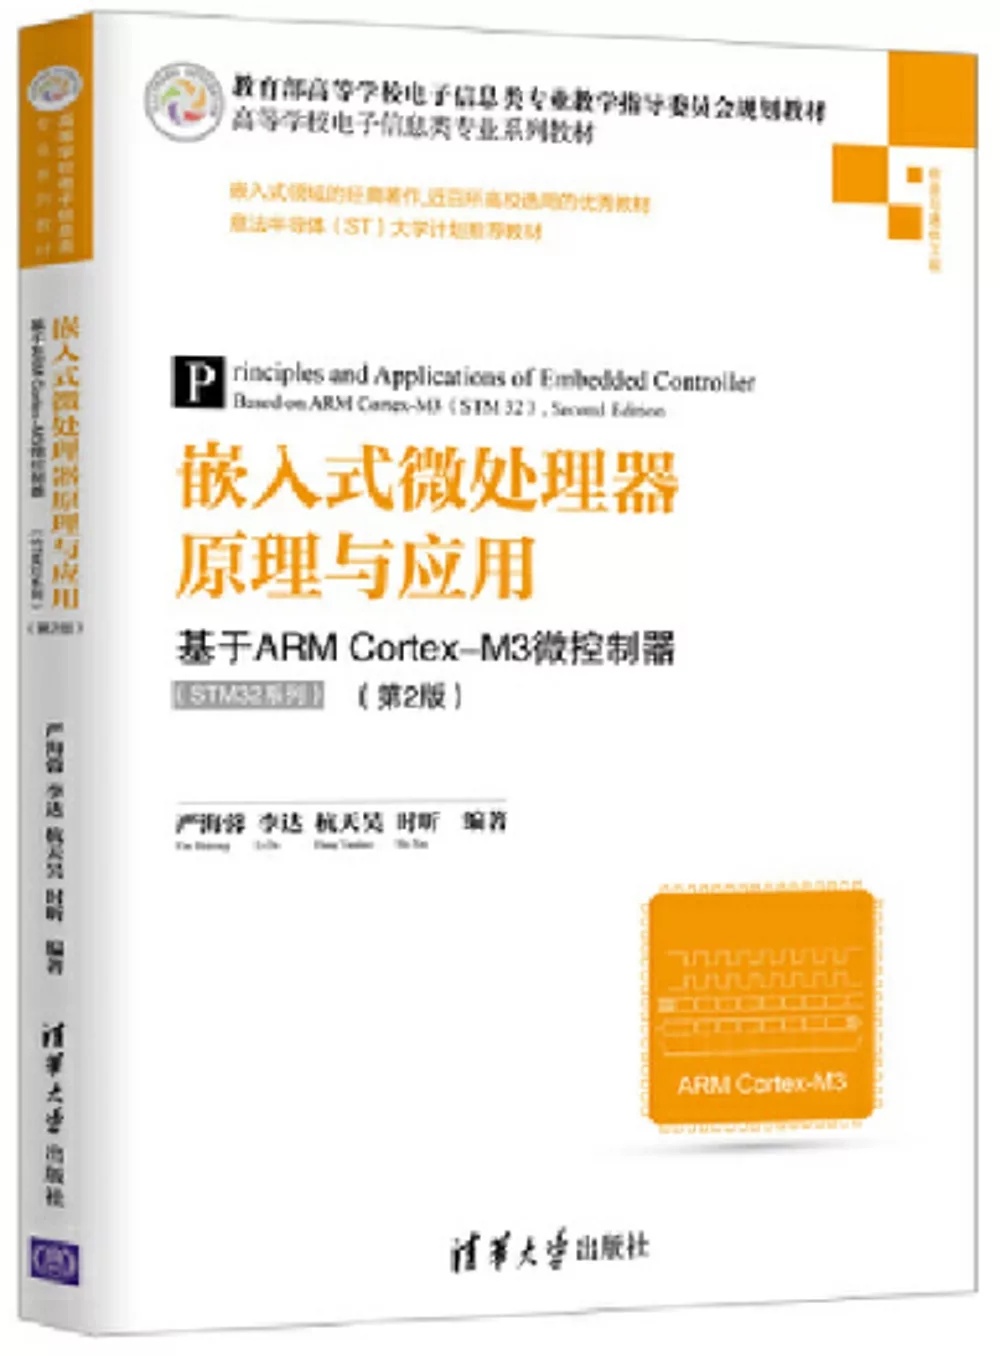 嵌入式微處理器原理與應用：基於ARM Cortex-M3微控制器(STM32系列)(第2版)